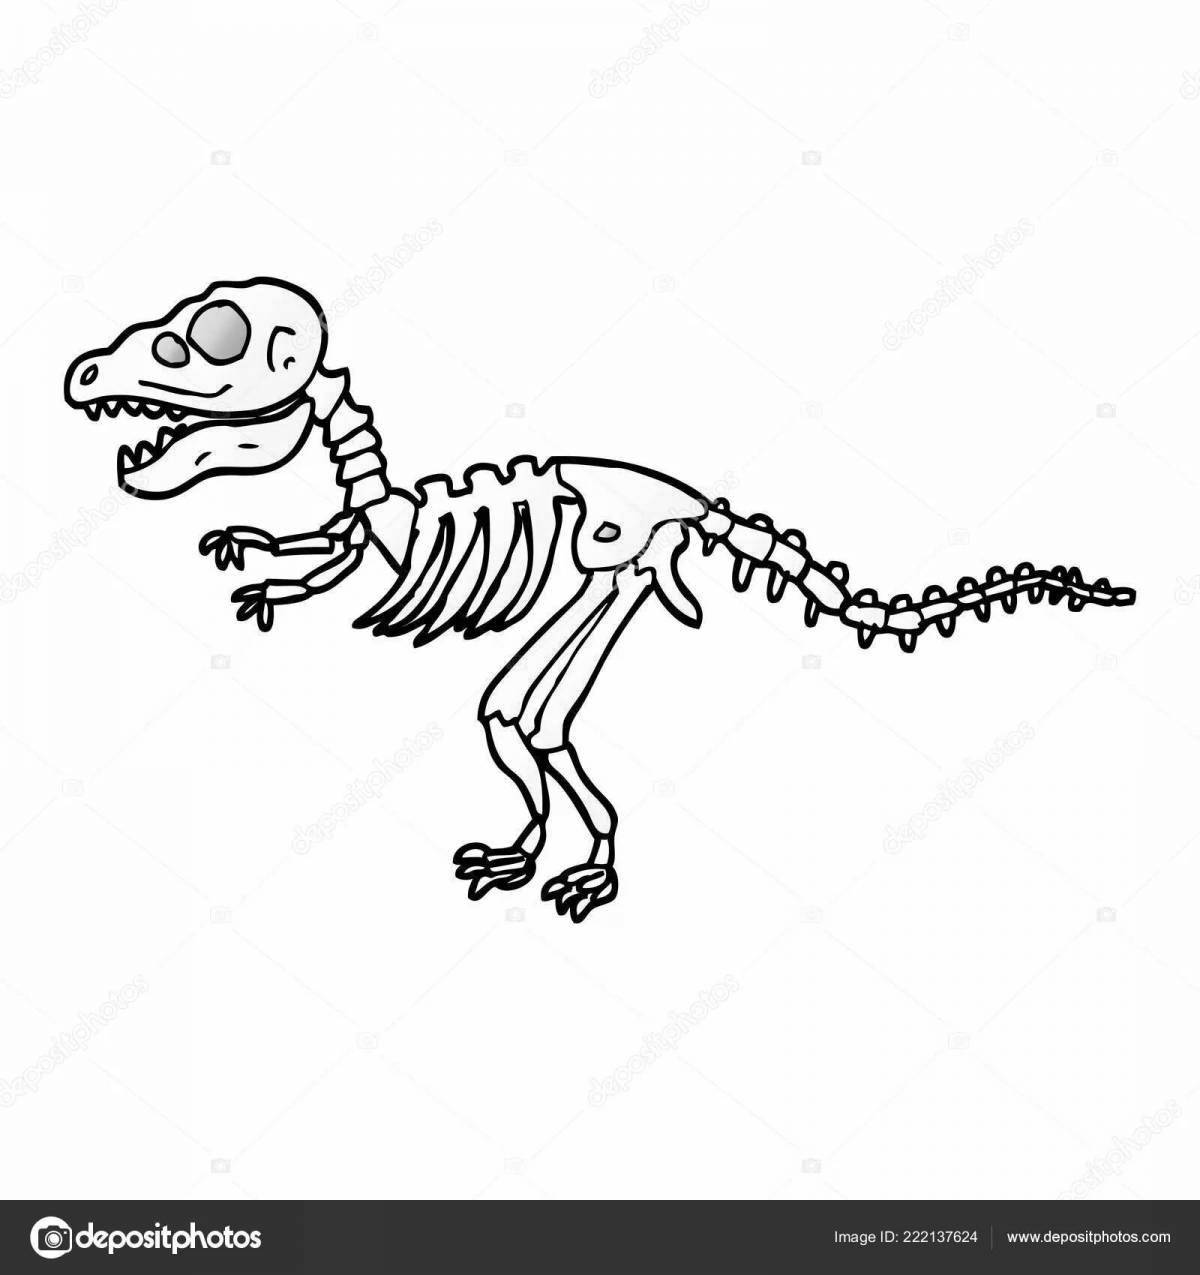 Great dinosaur bone coloring